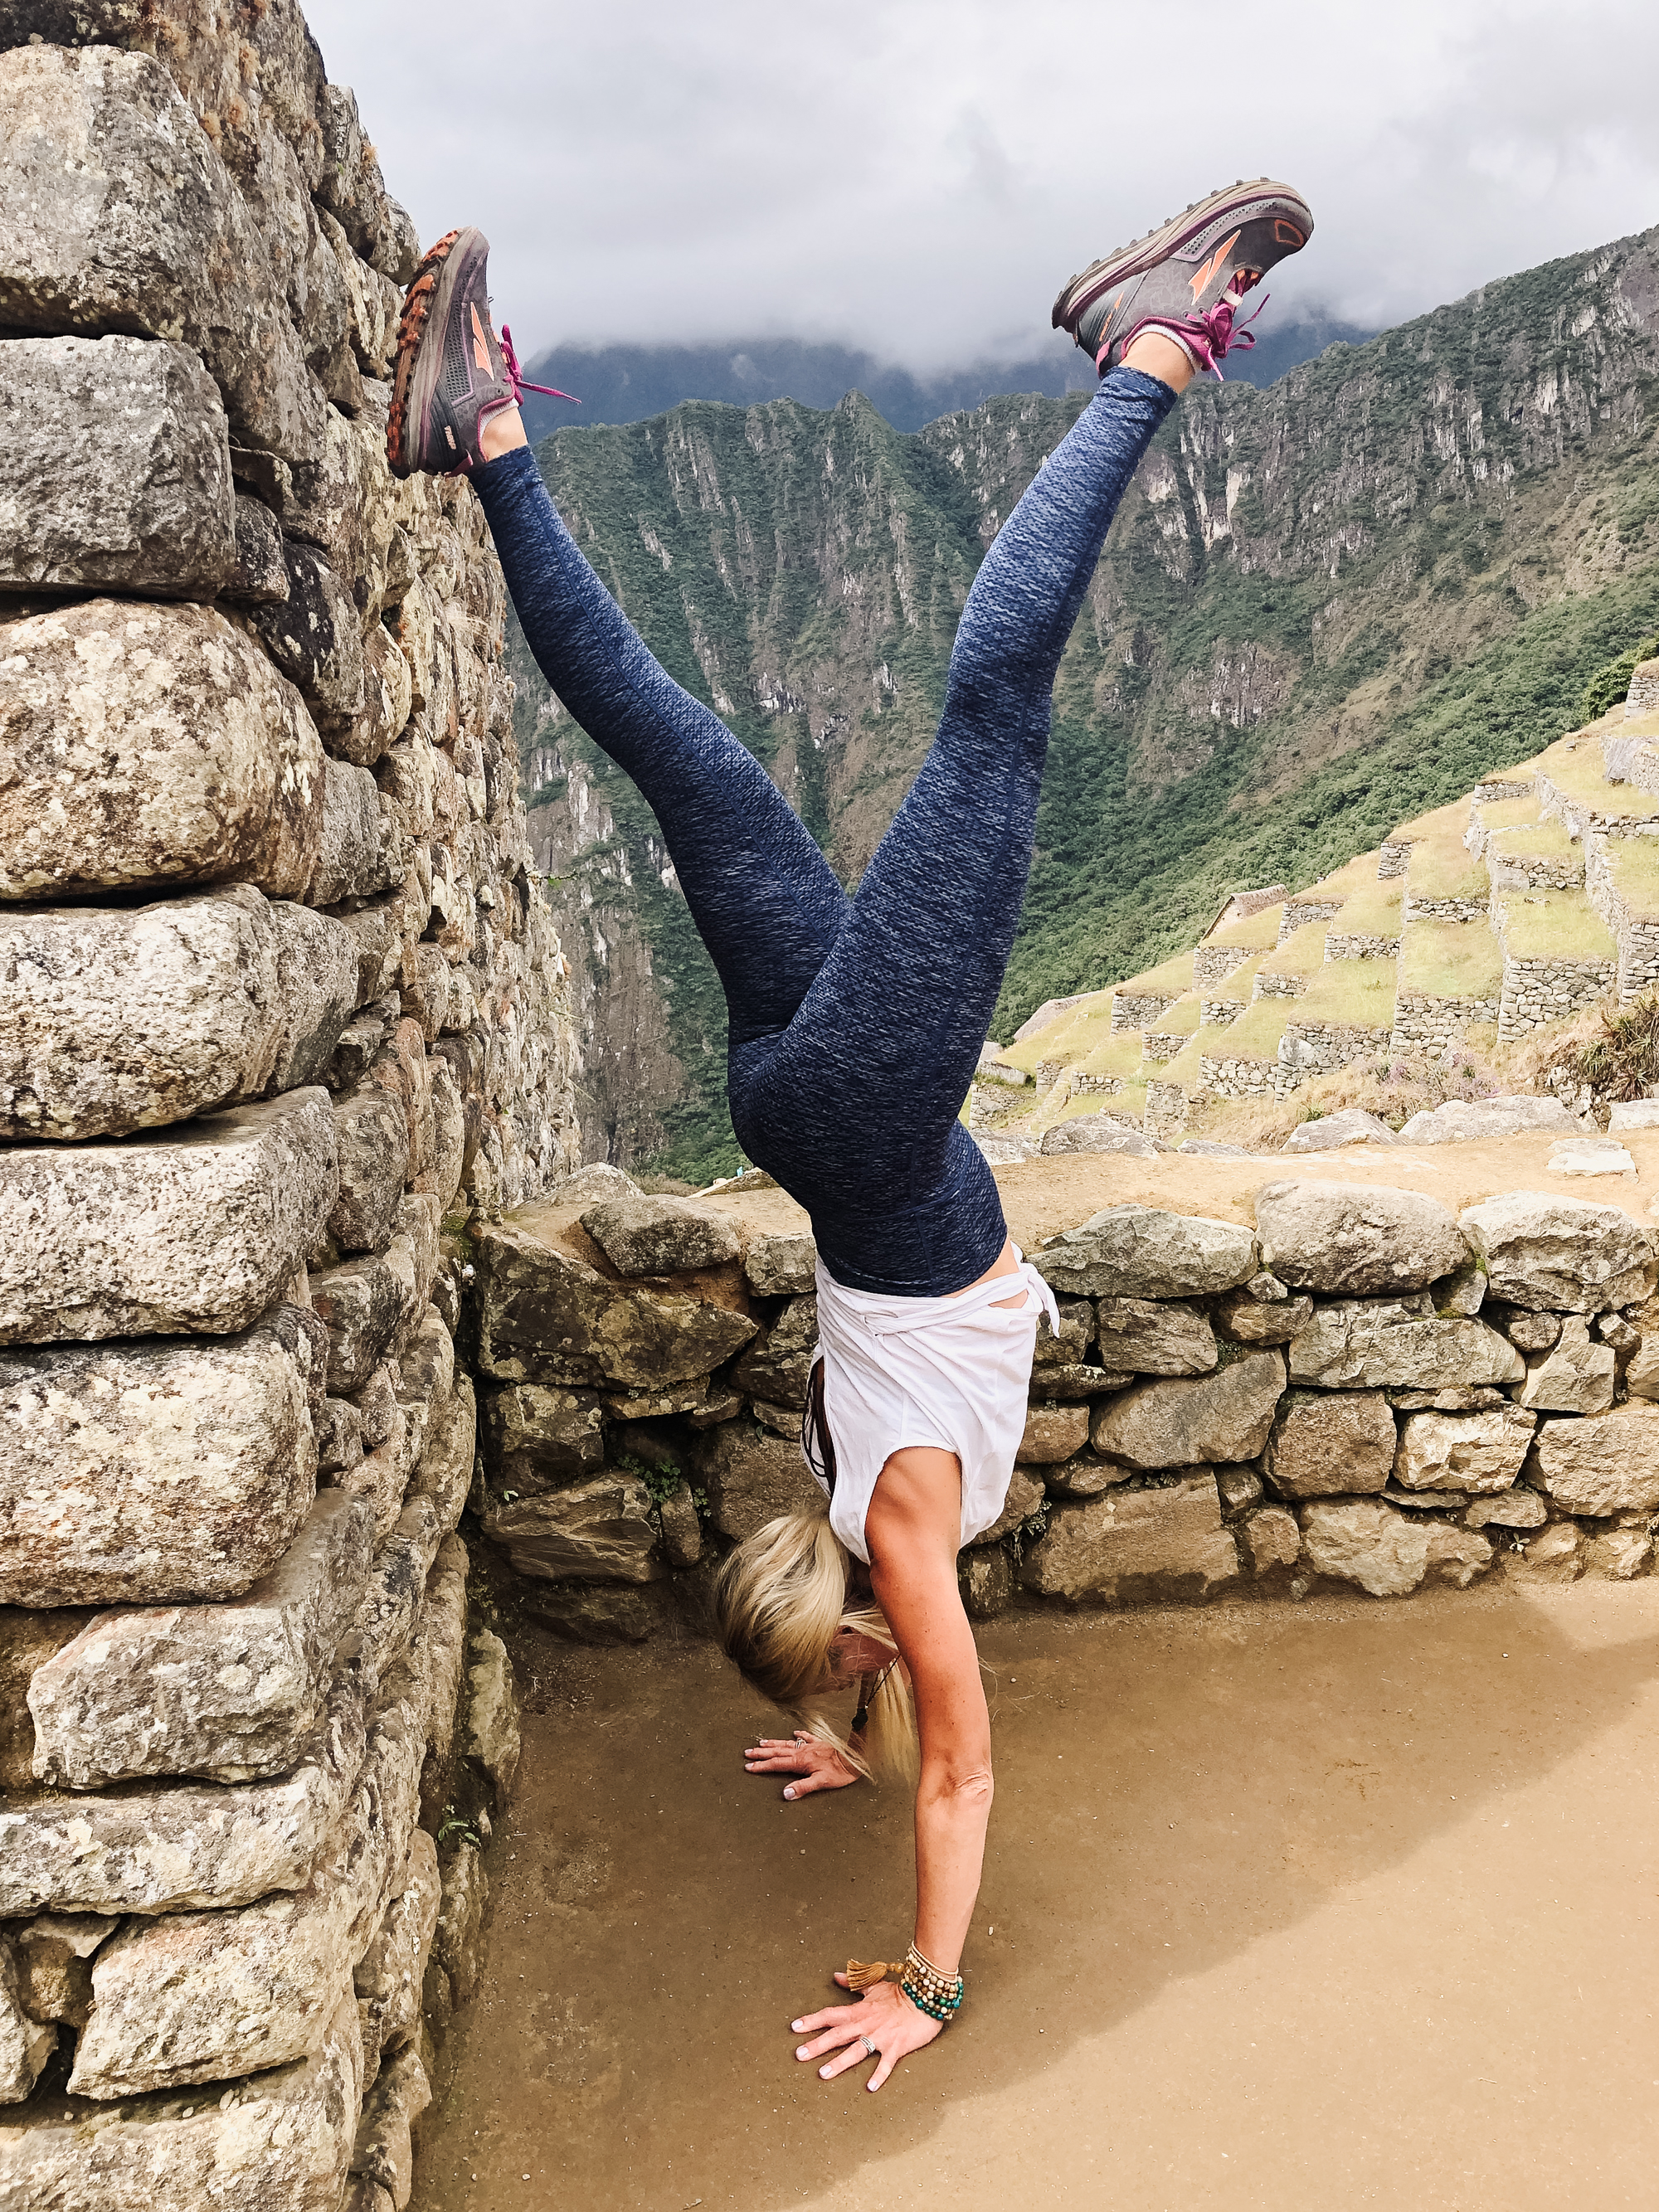 handstanding at machu picchu during our magical trip to peru. #peru #handstand #yogaretreat